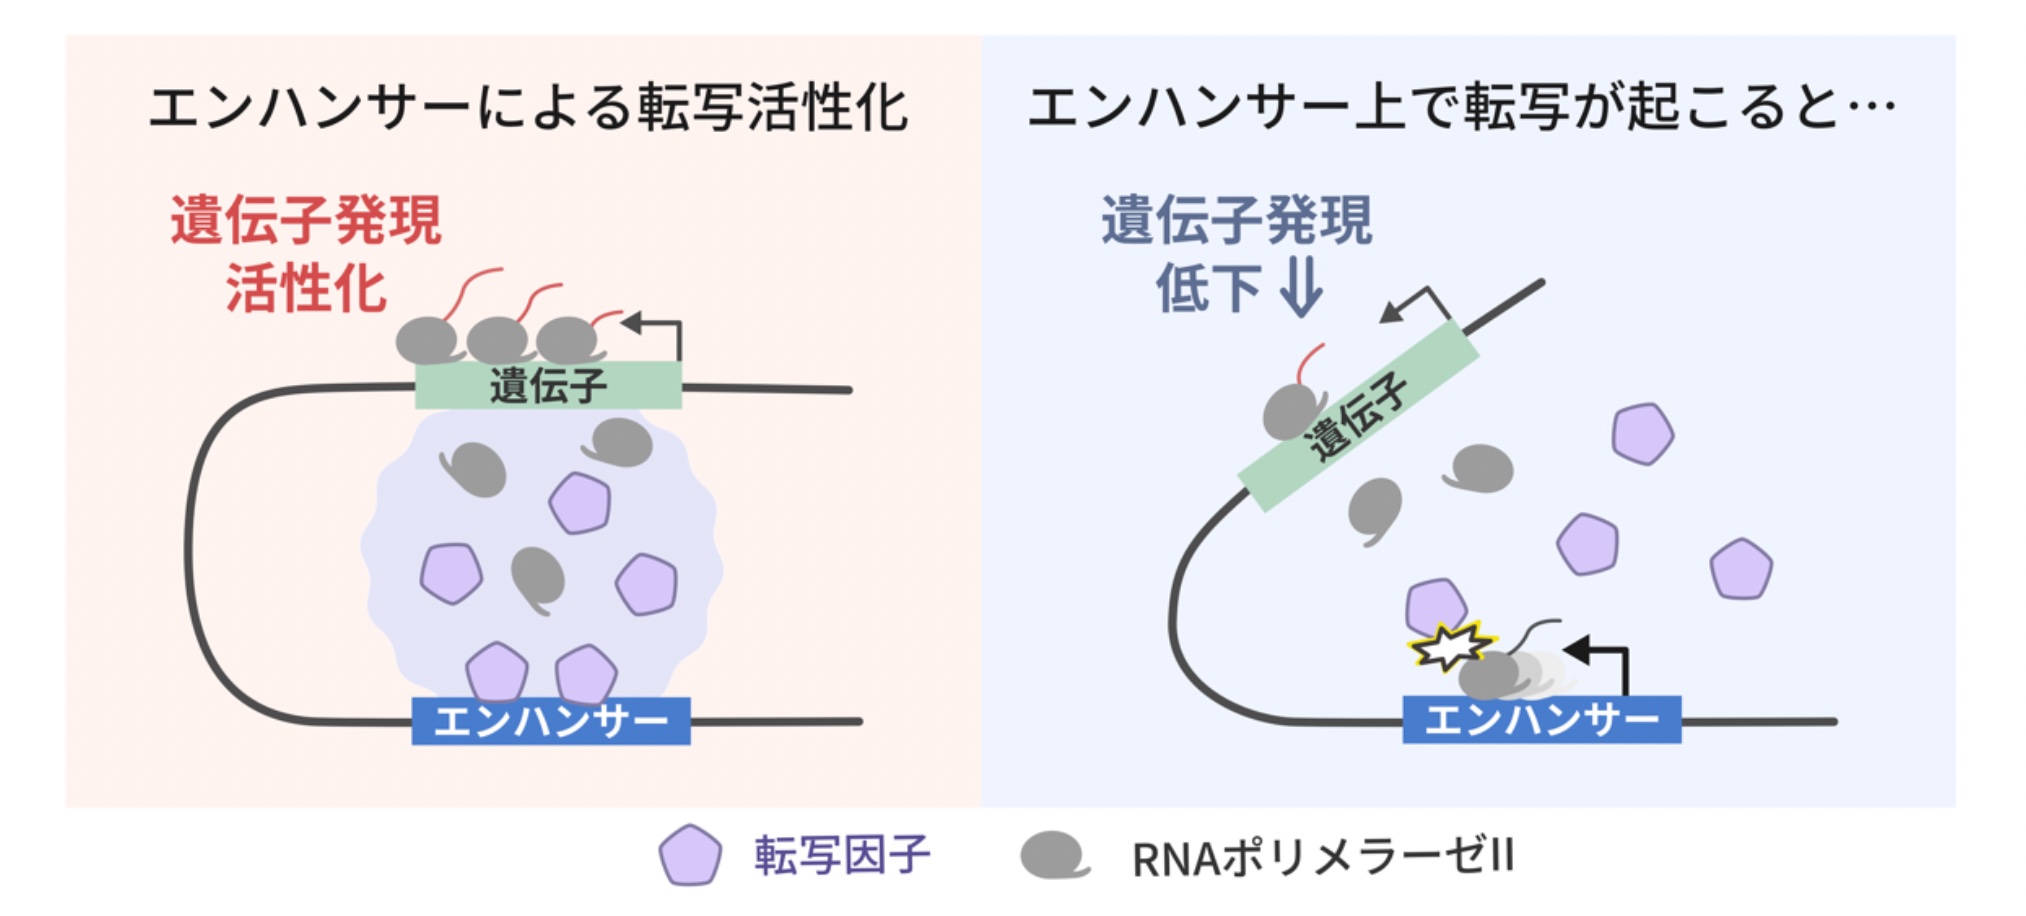 エンハンサーは特定のコード領域からの転写効率を向上させる働きを持つが、RNAの合成を担う転写酵素がエンハンサー上を進行すると転写因子の集合が妨害され、コード領域の転写が抑制される